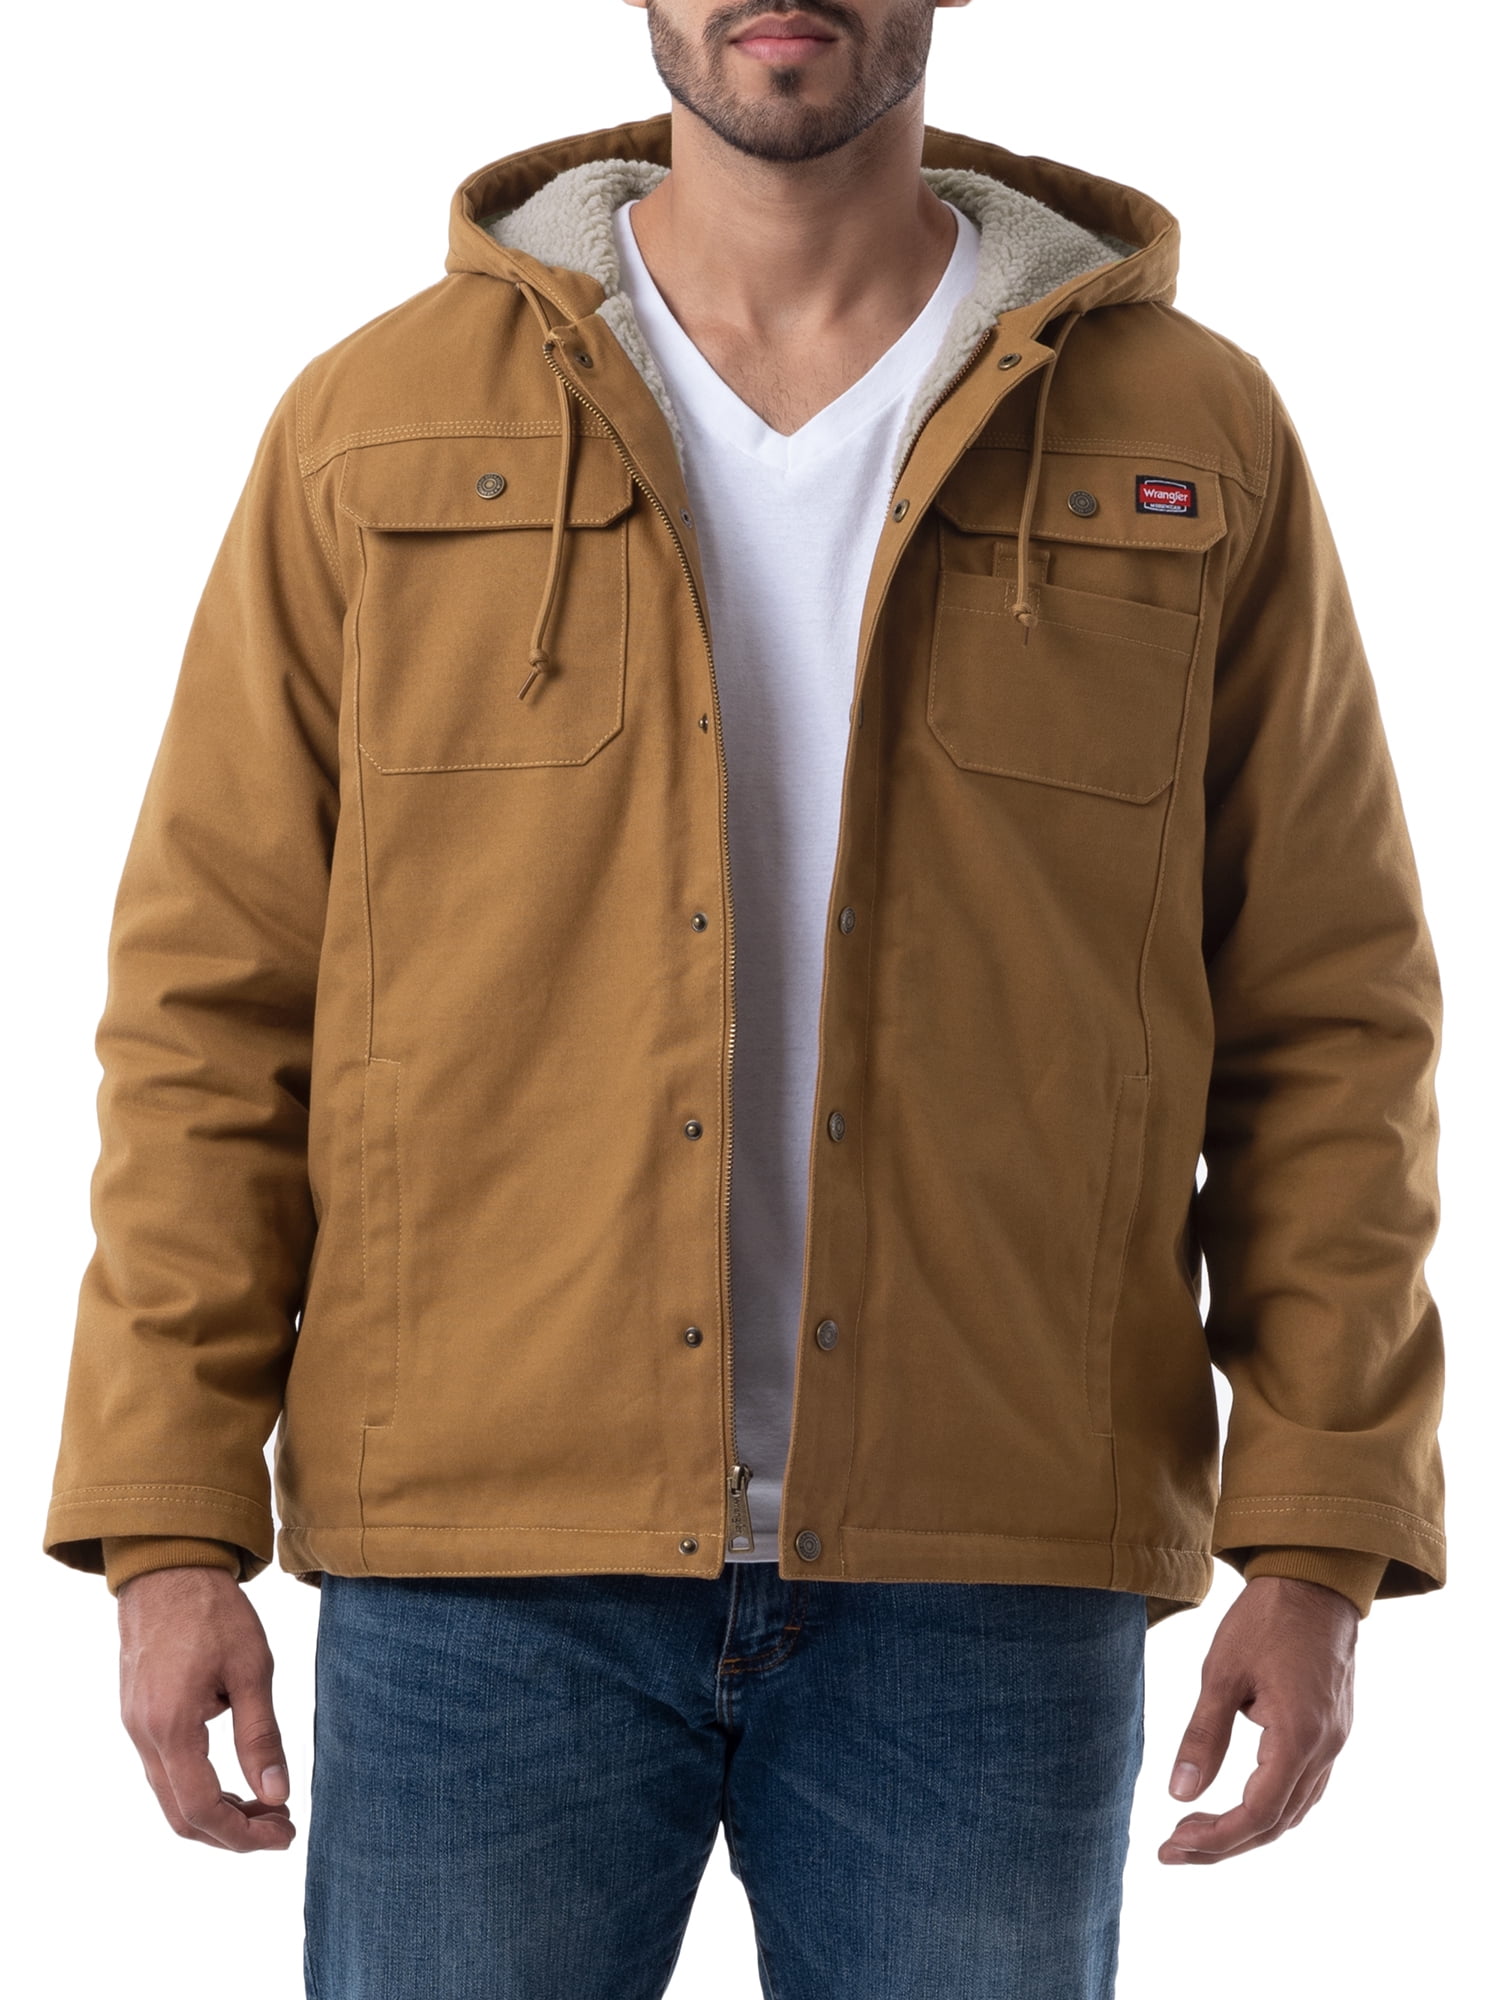 Wrangler Workwear Men's Sherpa Lined Duck Jacket 